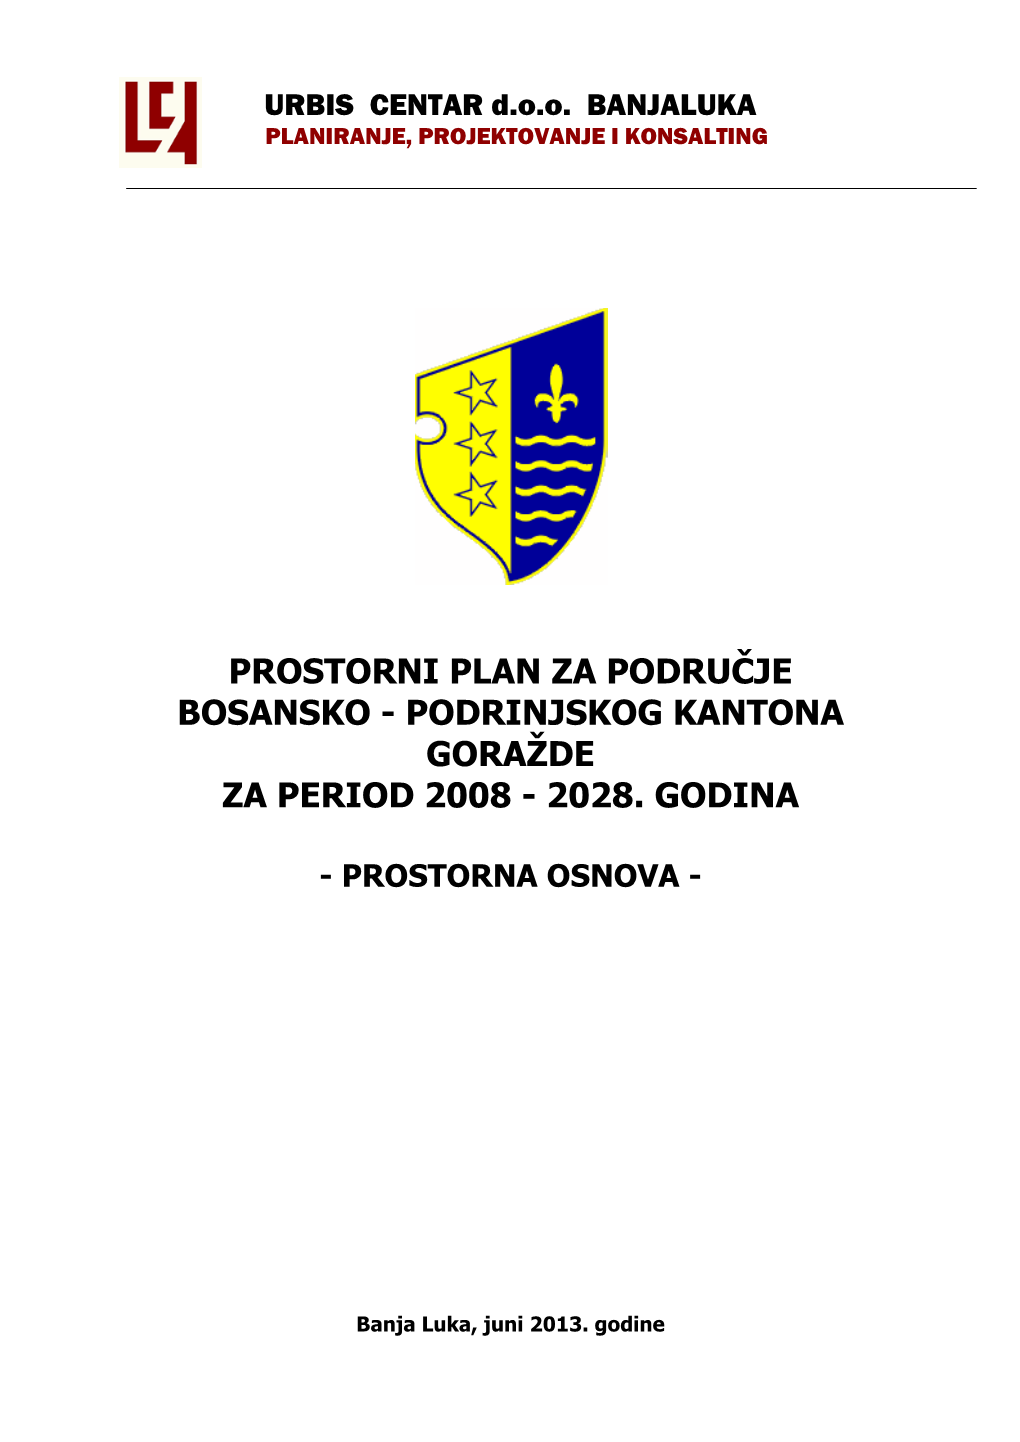 Prostorni Plan Za Područje Bosansko - Podrinjskog Kantona Goražde Za Period 2008 - 2028